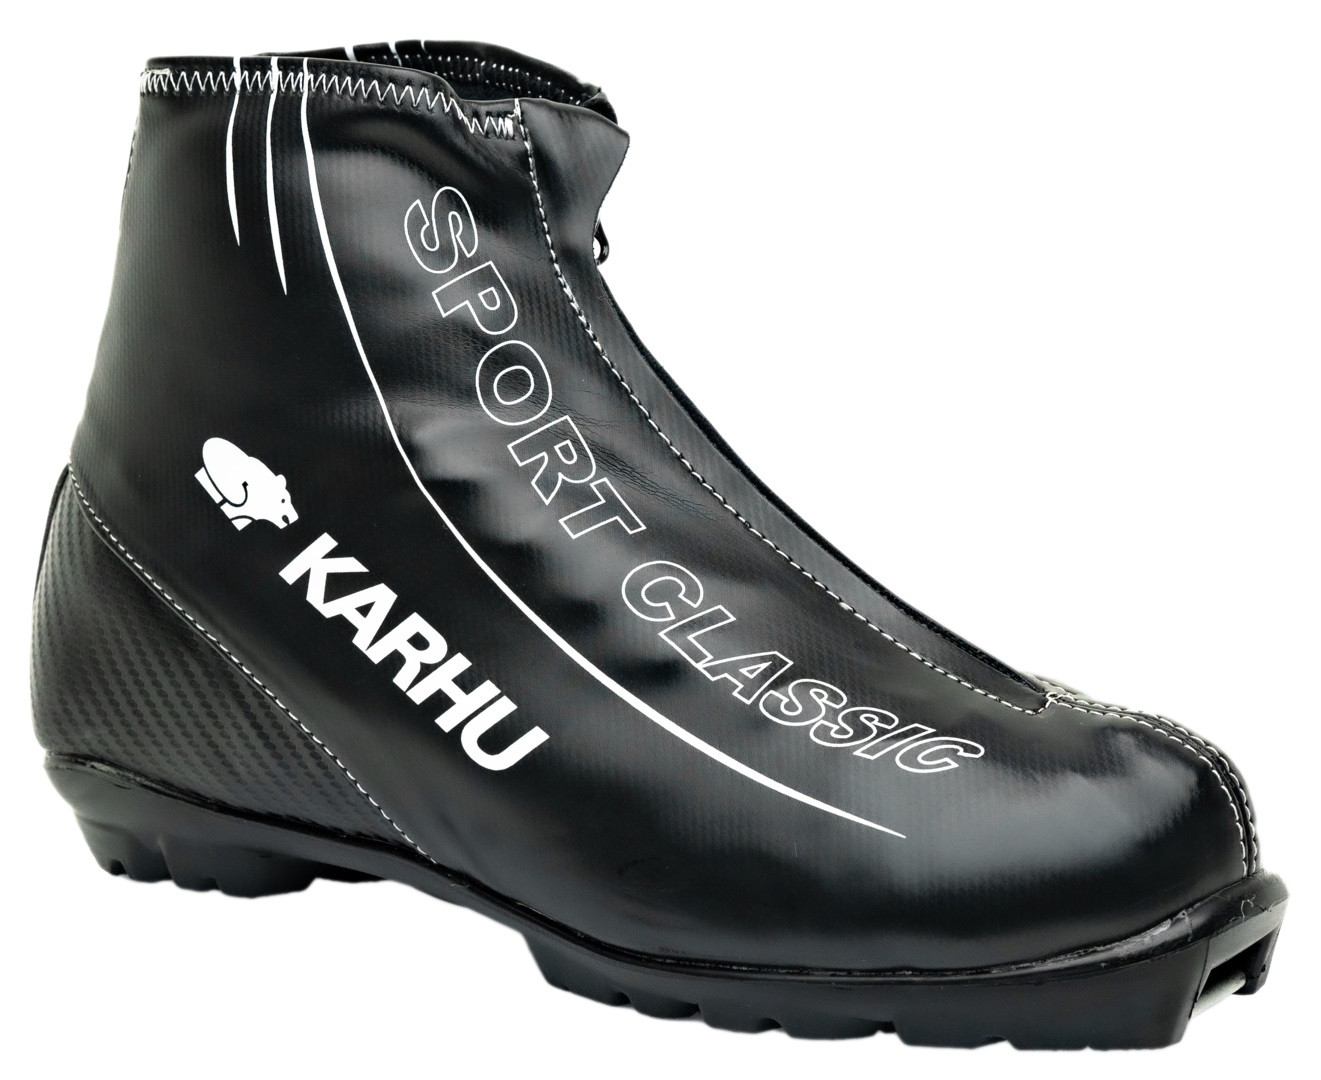 KARHU Sport Classic Ski Boots